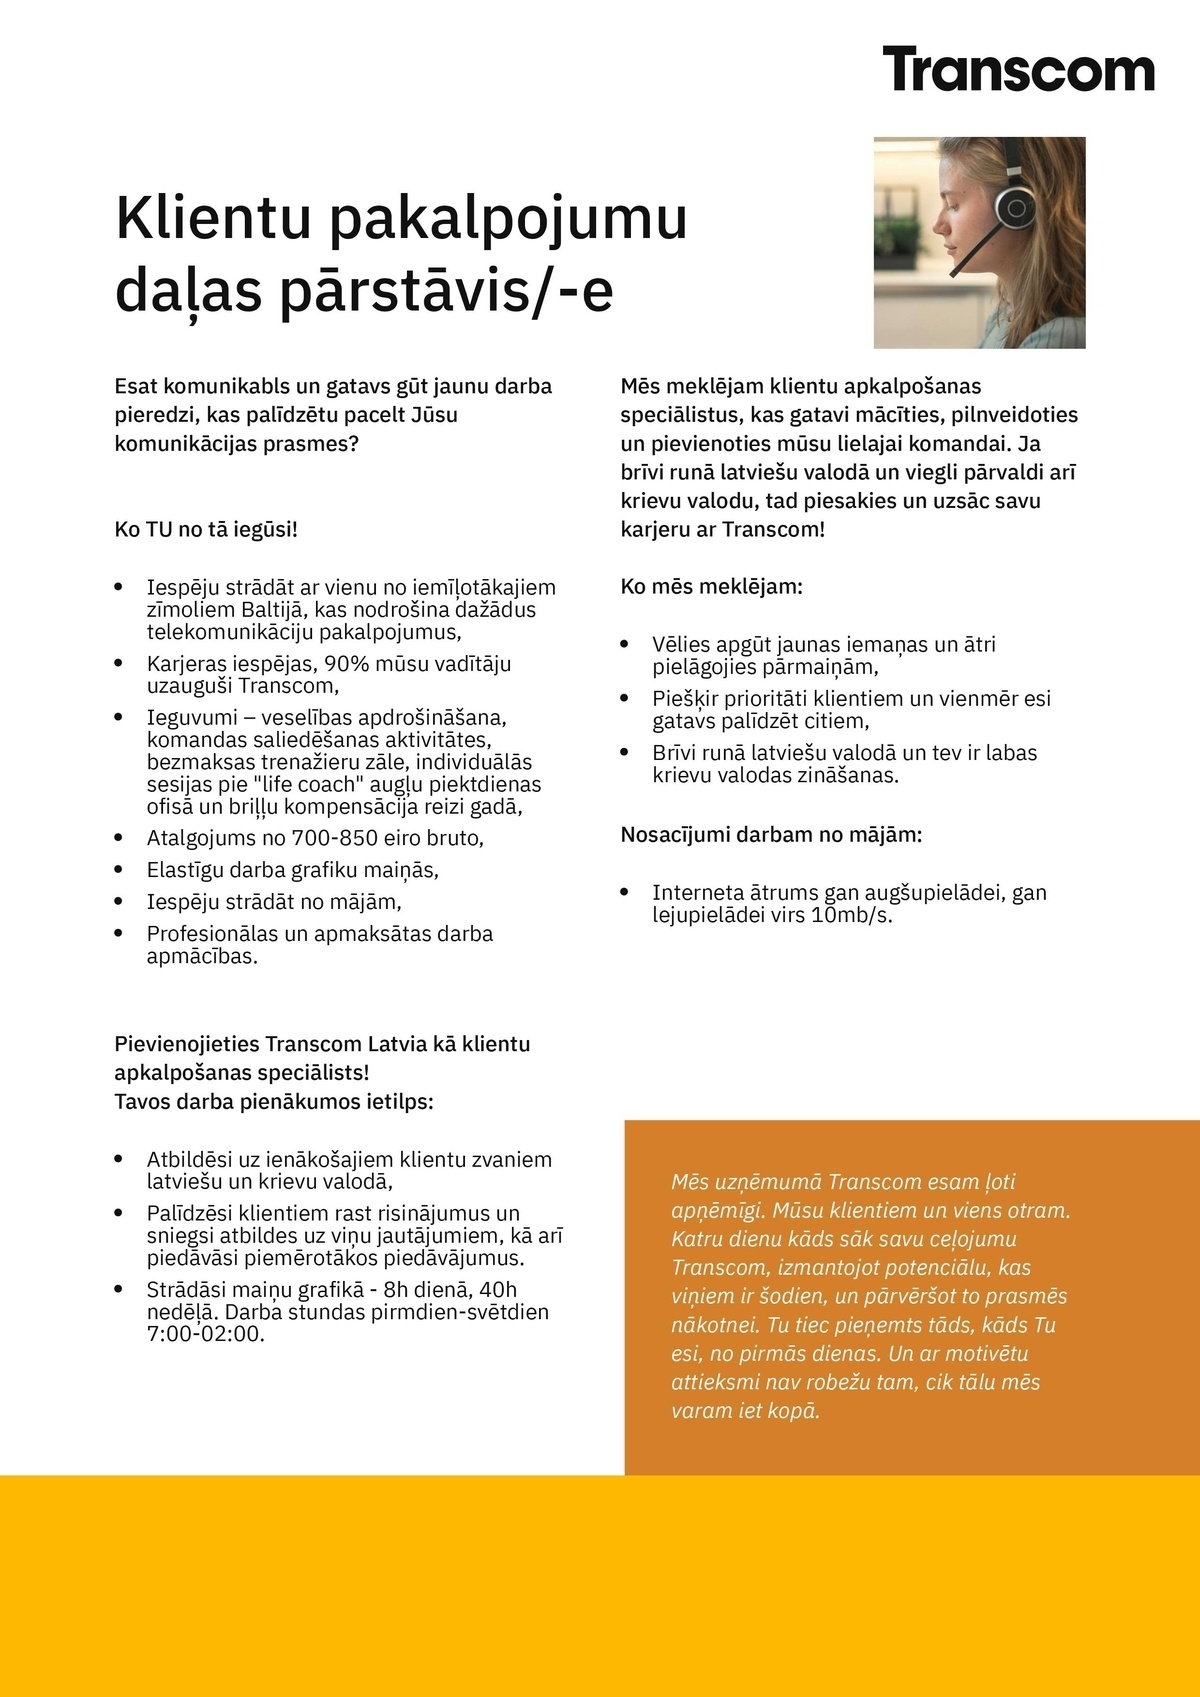 Transcom Worldwide Latvia, SIA Klientu pakalpojumu daļas pārstāvis/-e